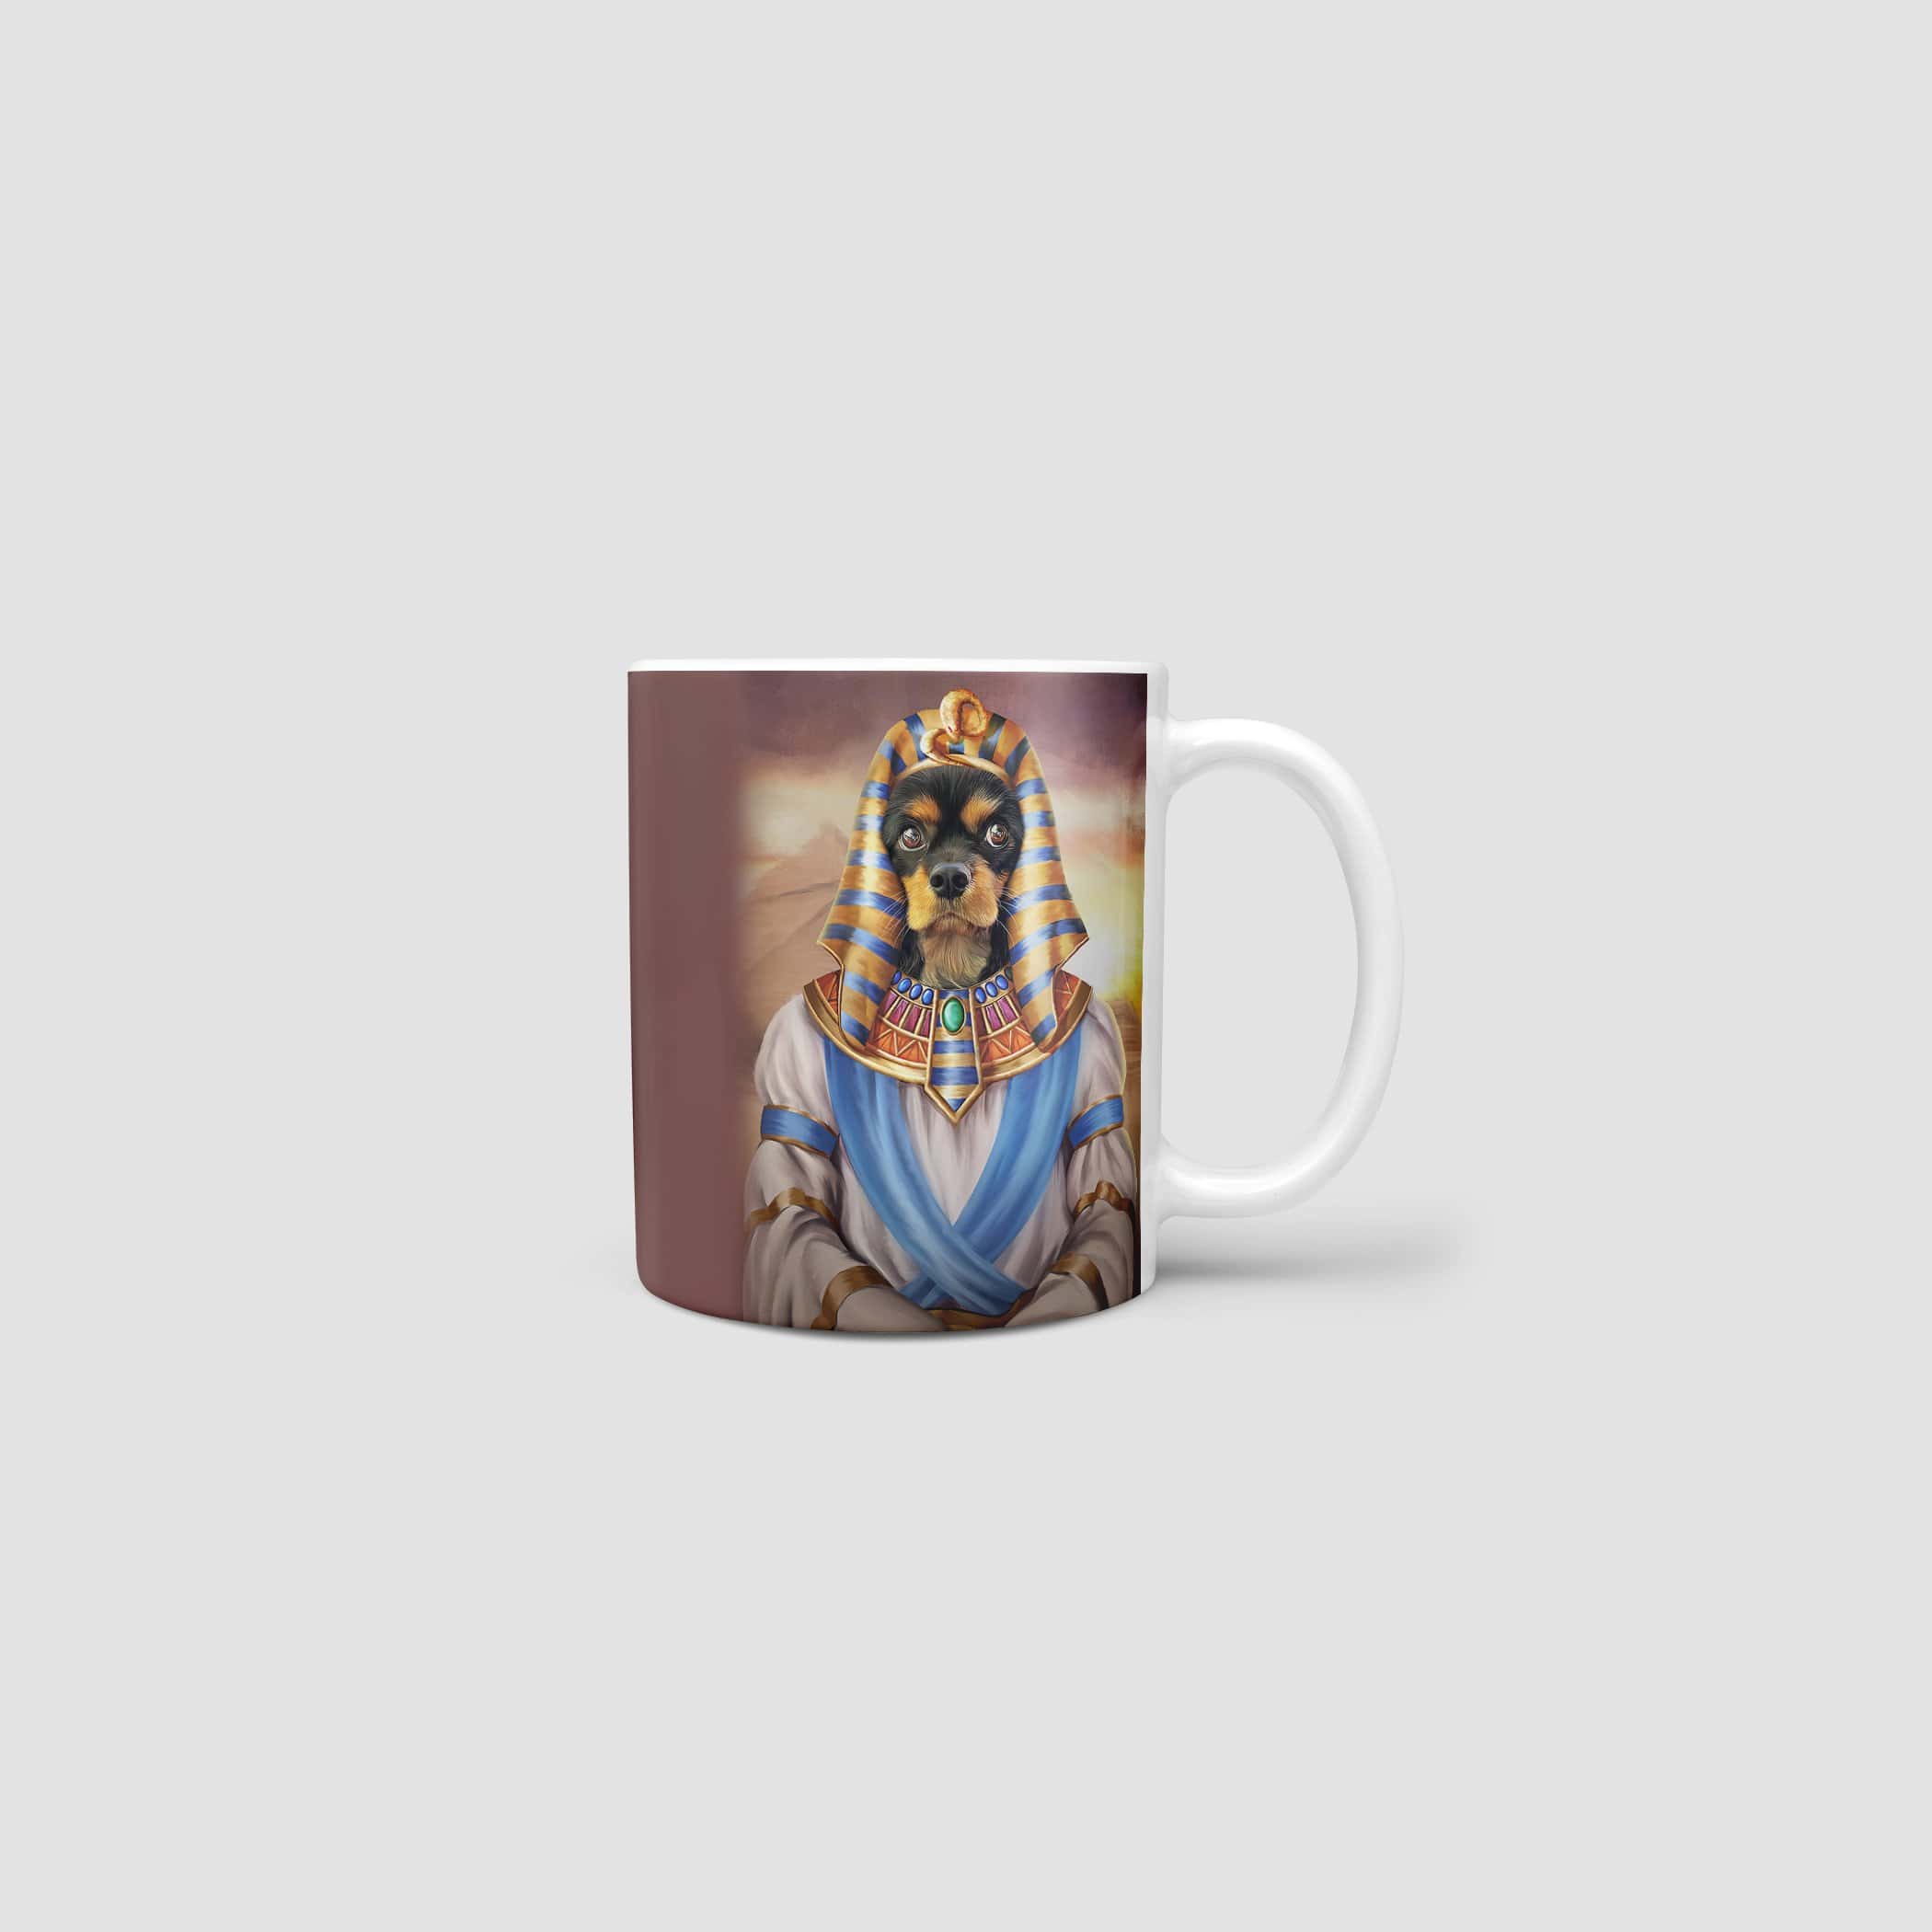 The Pharaoh - Custom Mug